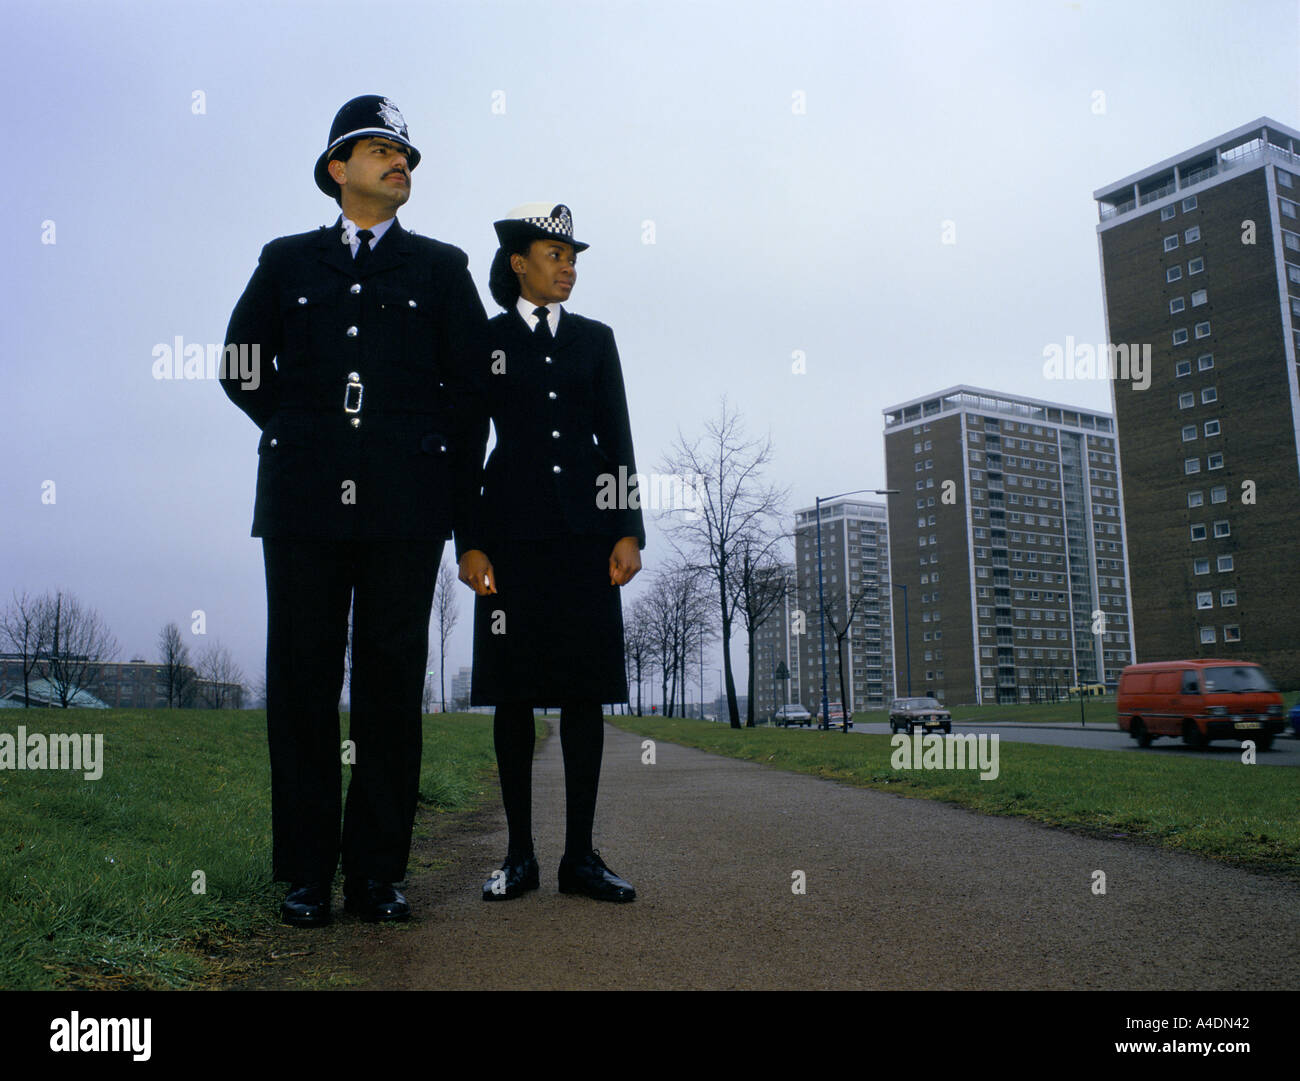 Les Asiatiques et les noirs des agents de police, Royaume-Uni Banque D'Images